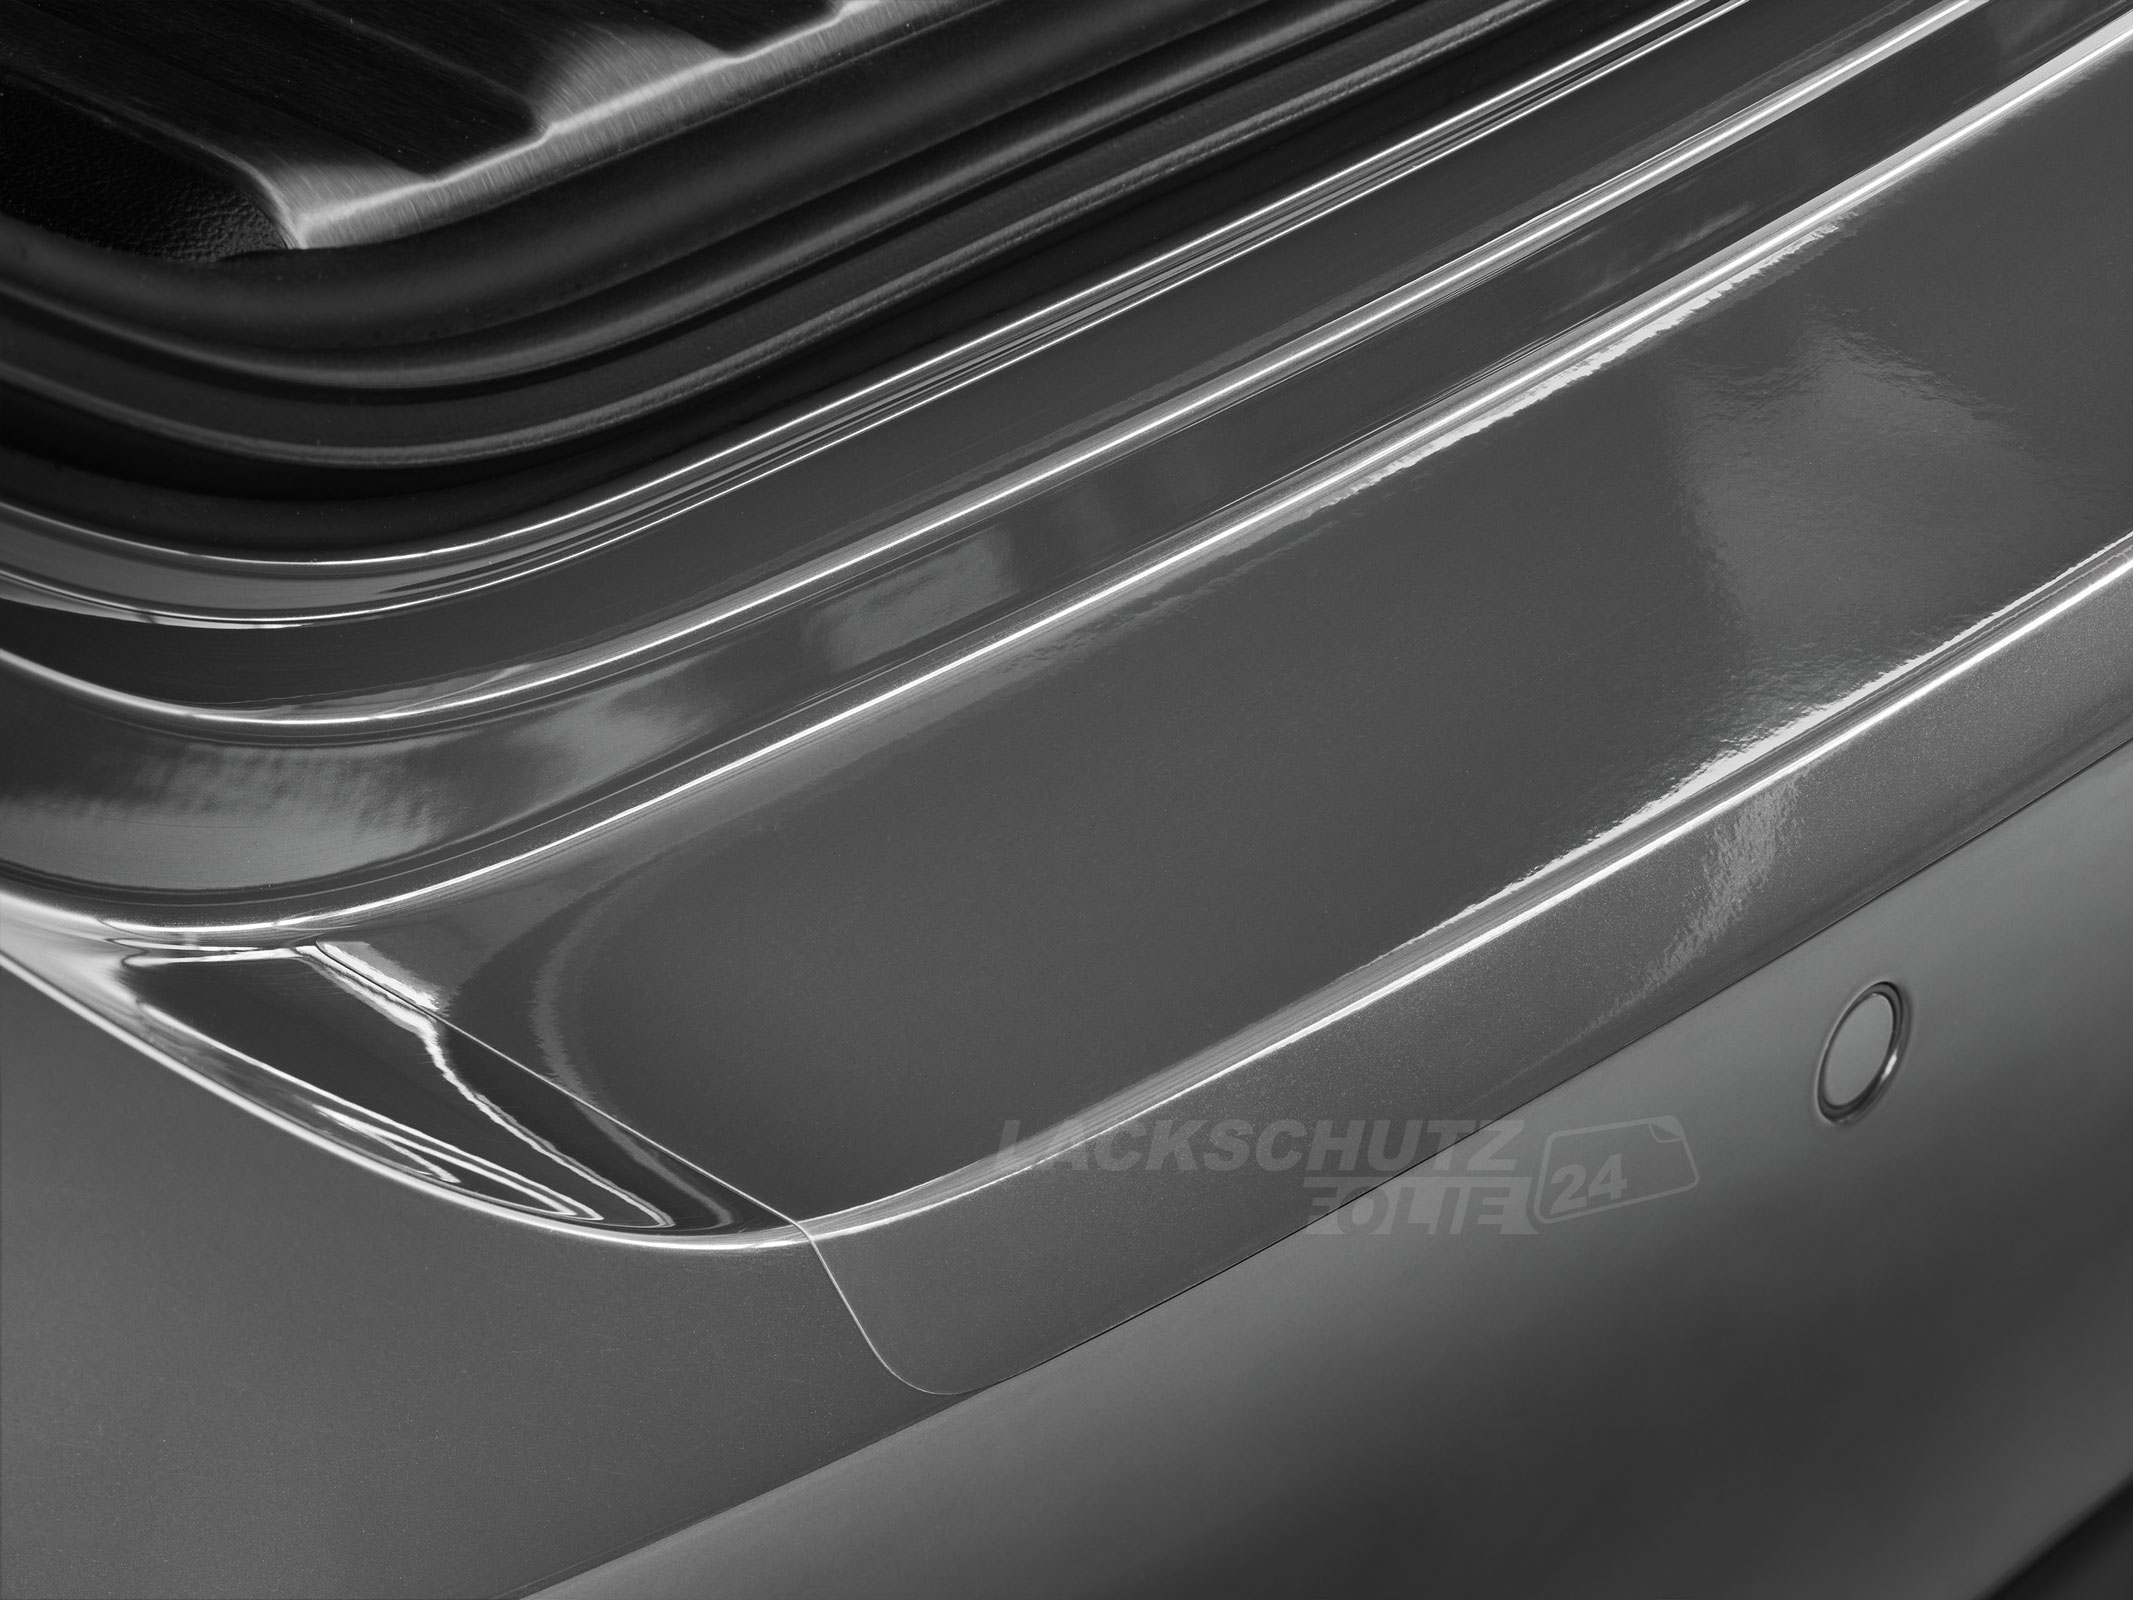 Ladekantenschutzfolie - Transparent Glatt Hochglänzend 150 µm stark für Seat Mii ab BJ 04/2012